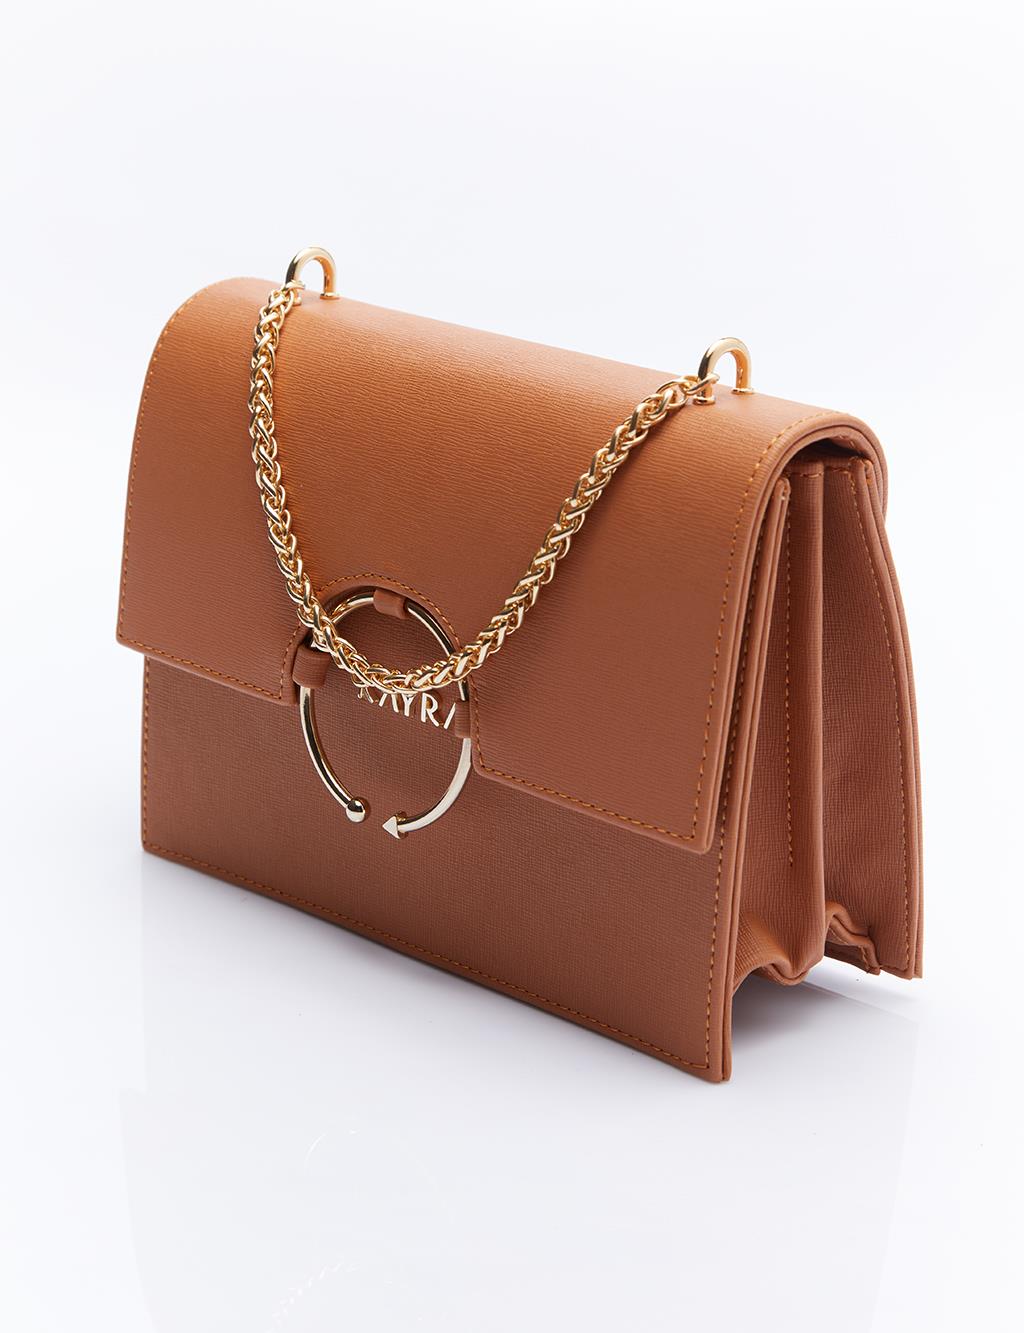 Дизайнерская сумка с ручкой-цепочкой, коричневая Kayra margine taba tabanlı sandalet